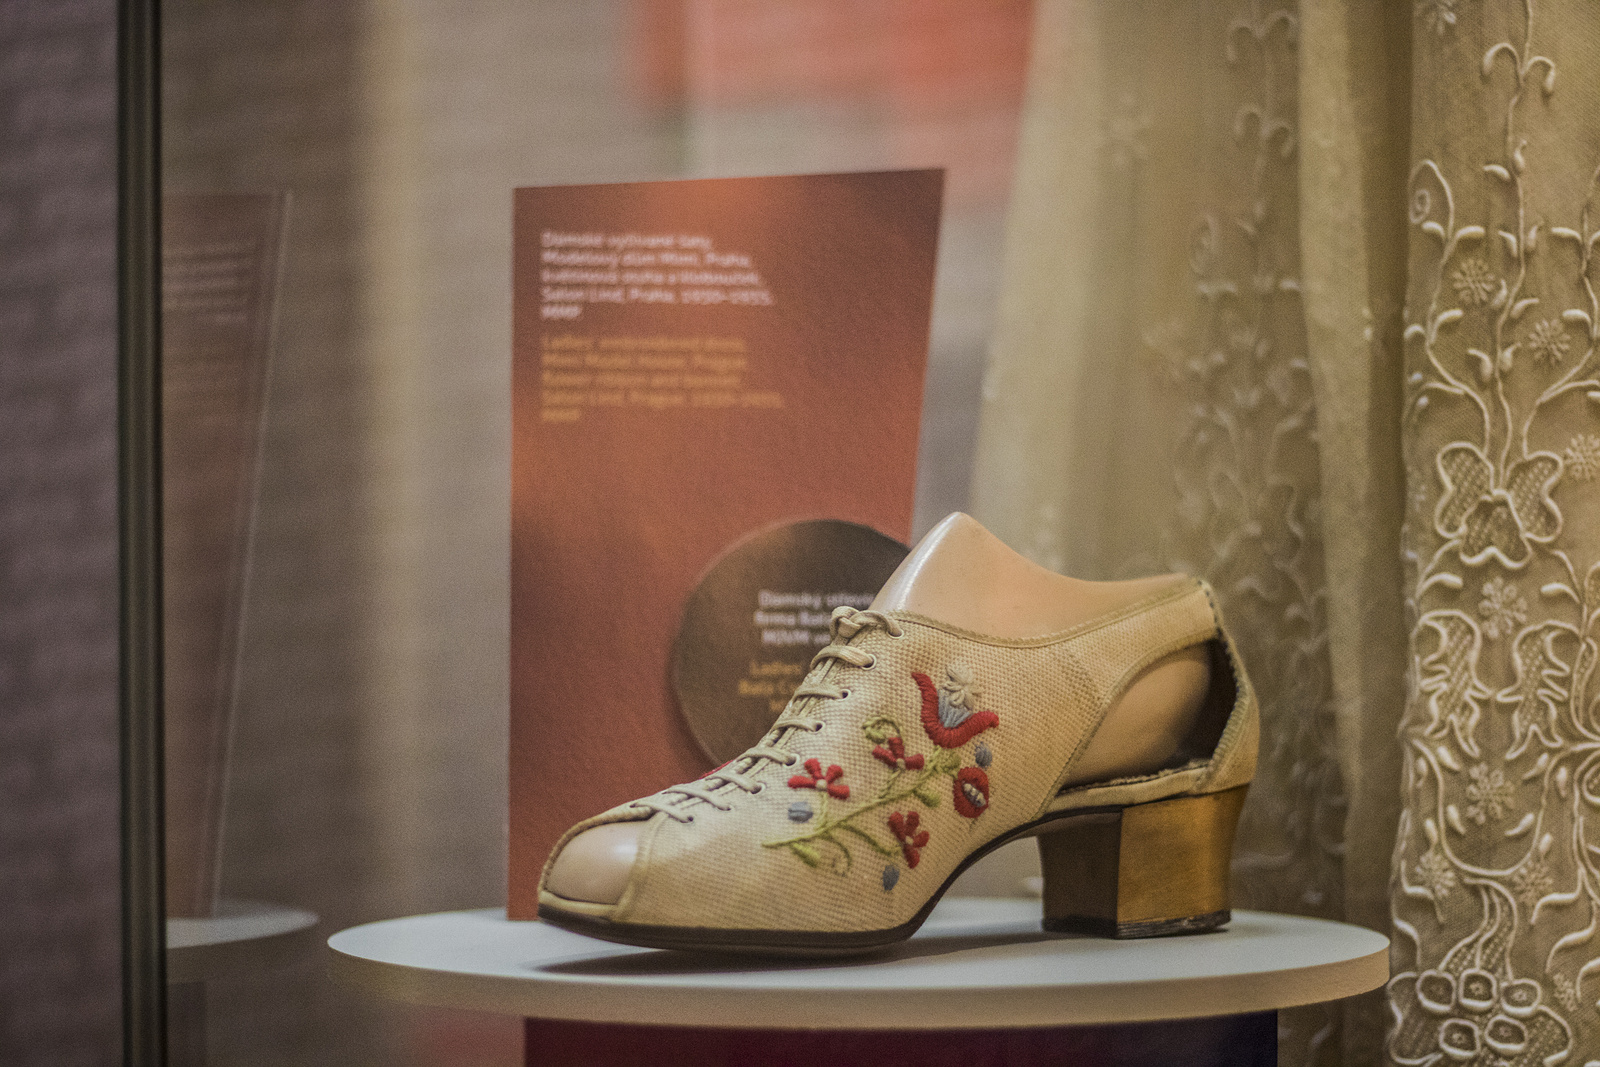 Meltonky, perka, séglovky. Výstava představuje Baťu i módu první republiky  - Pražský deník